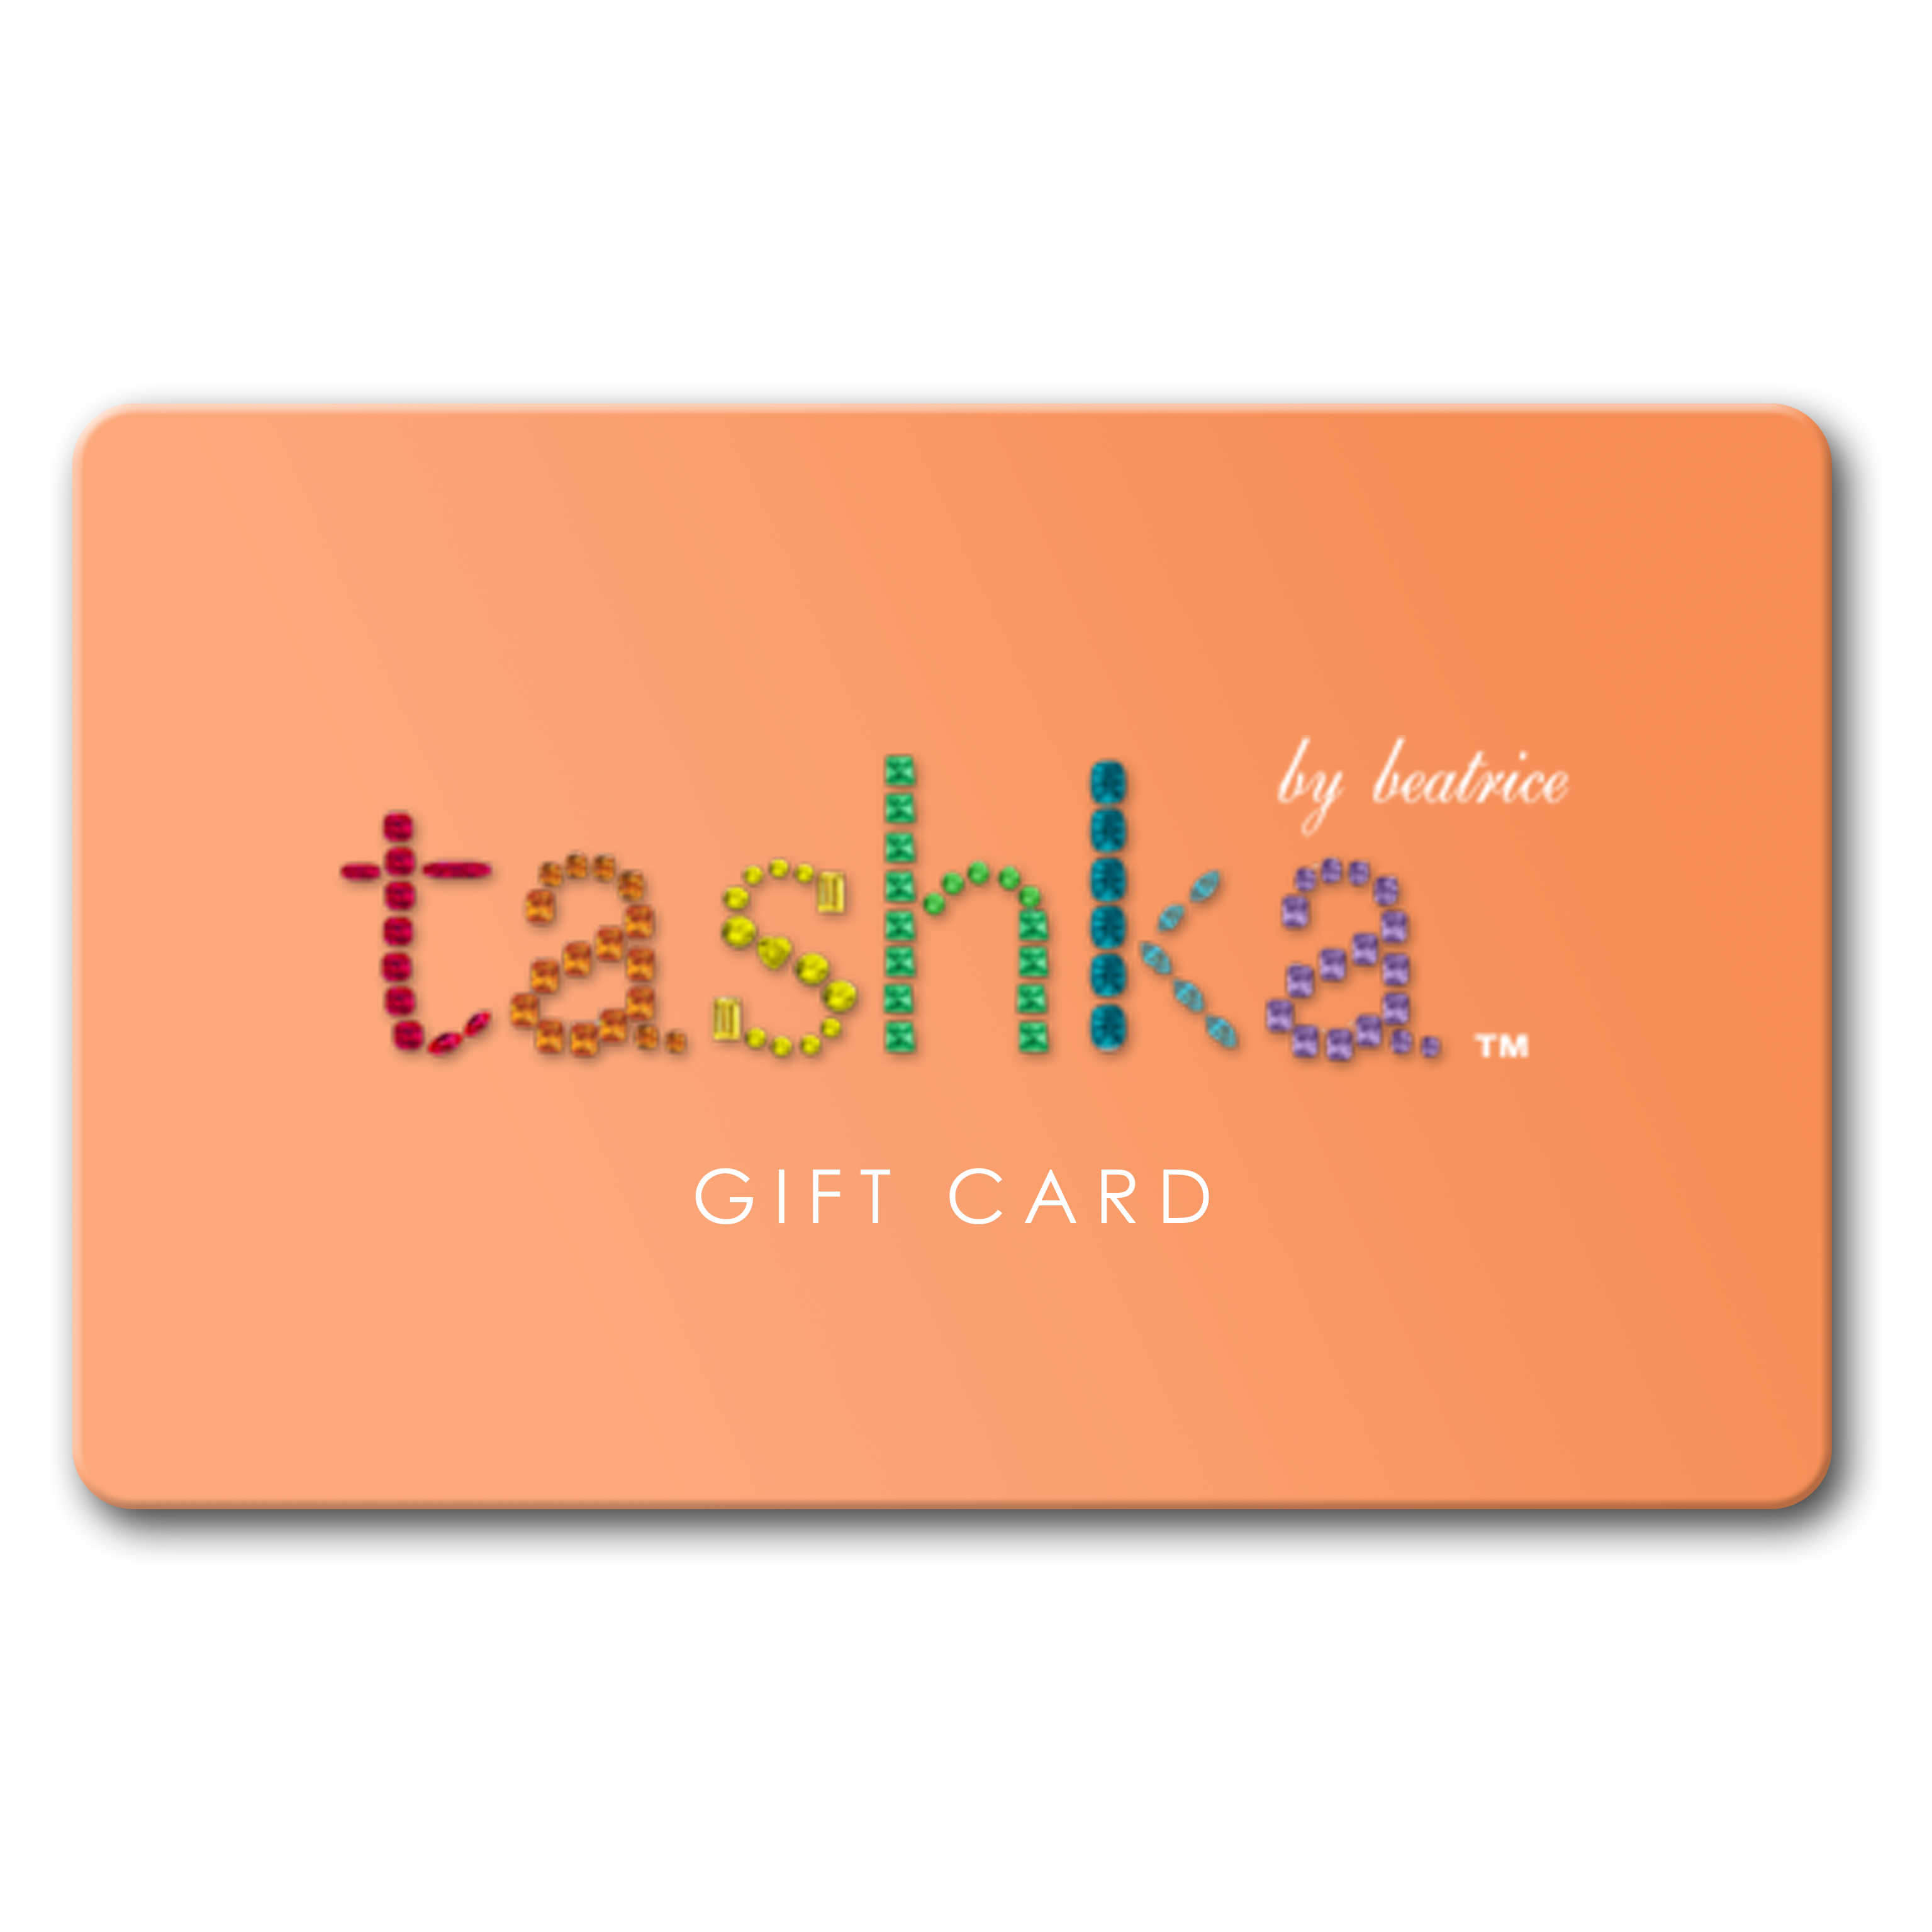 Tashka Gift Card